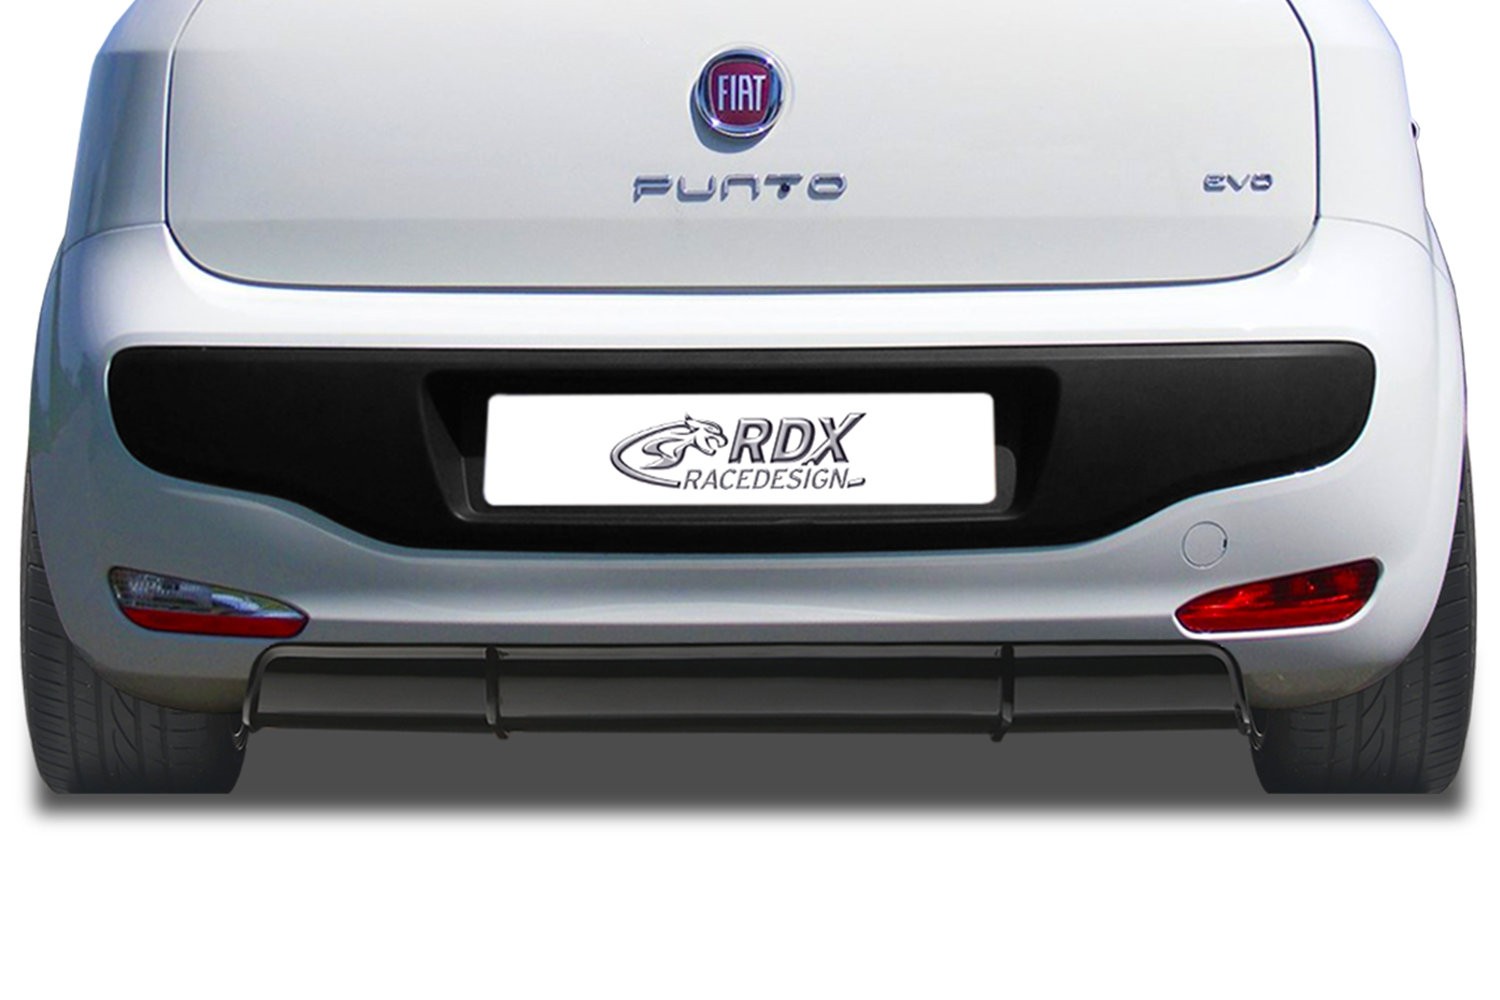 Diffuseur arrière convient à Fiat Punto Evo 2005-2018 3 & 5 portes bicorps ABS